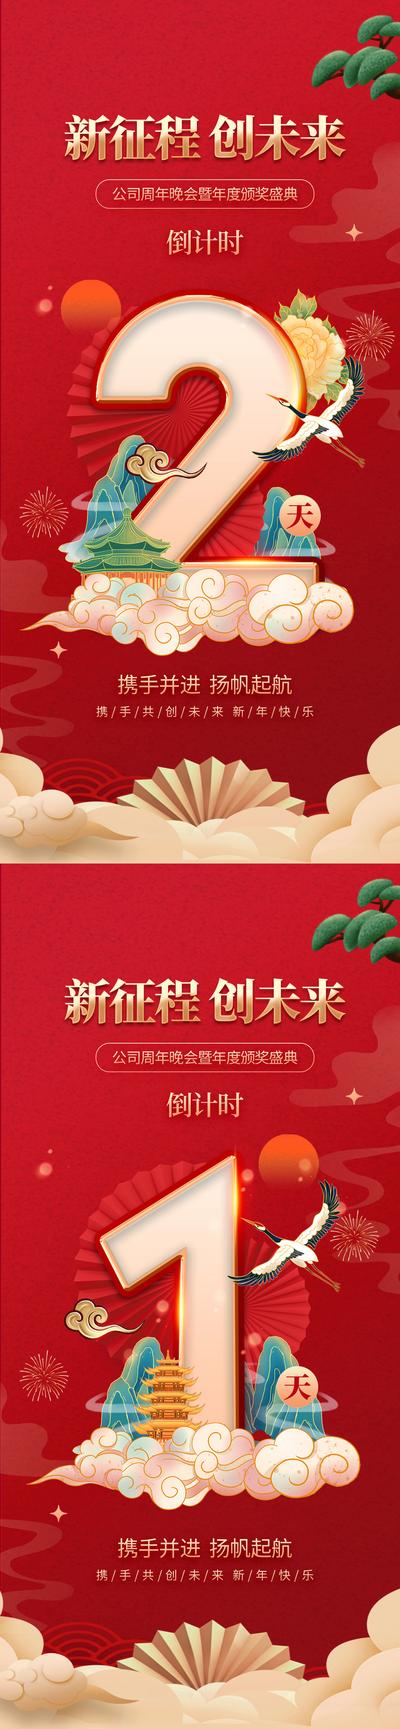 南门网 海报 中国传统节日 新年 年度盛典 年会 倒计时 红金 祥云 数字 系列